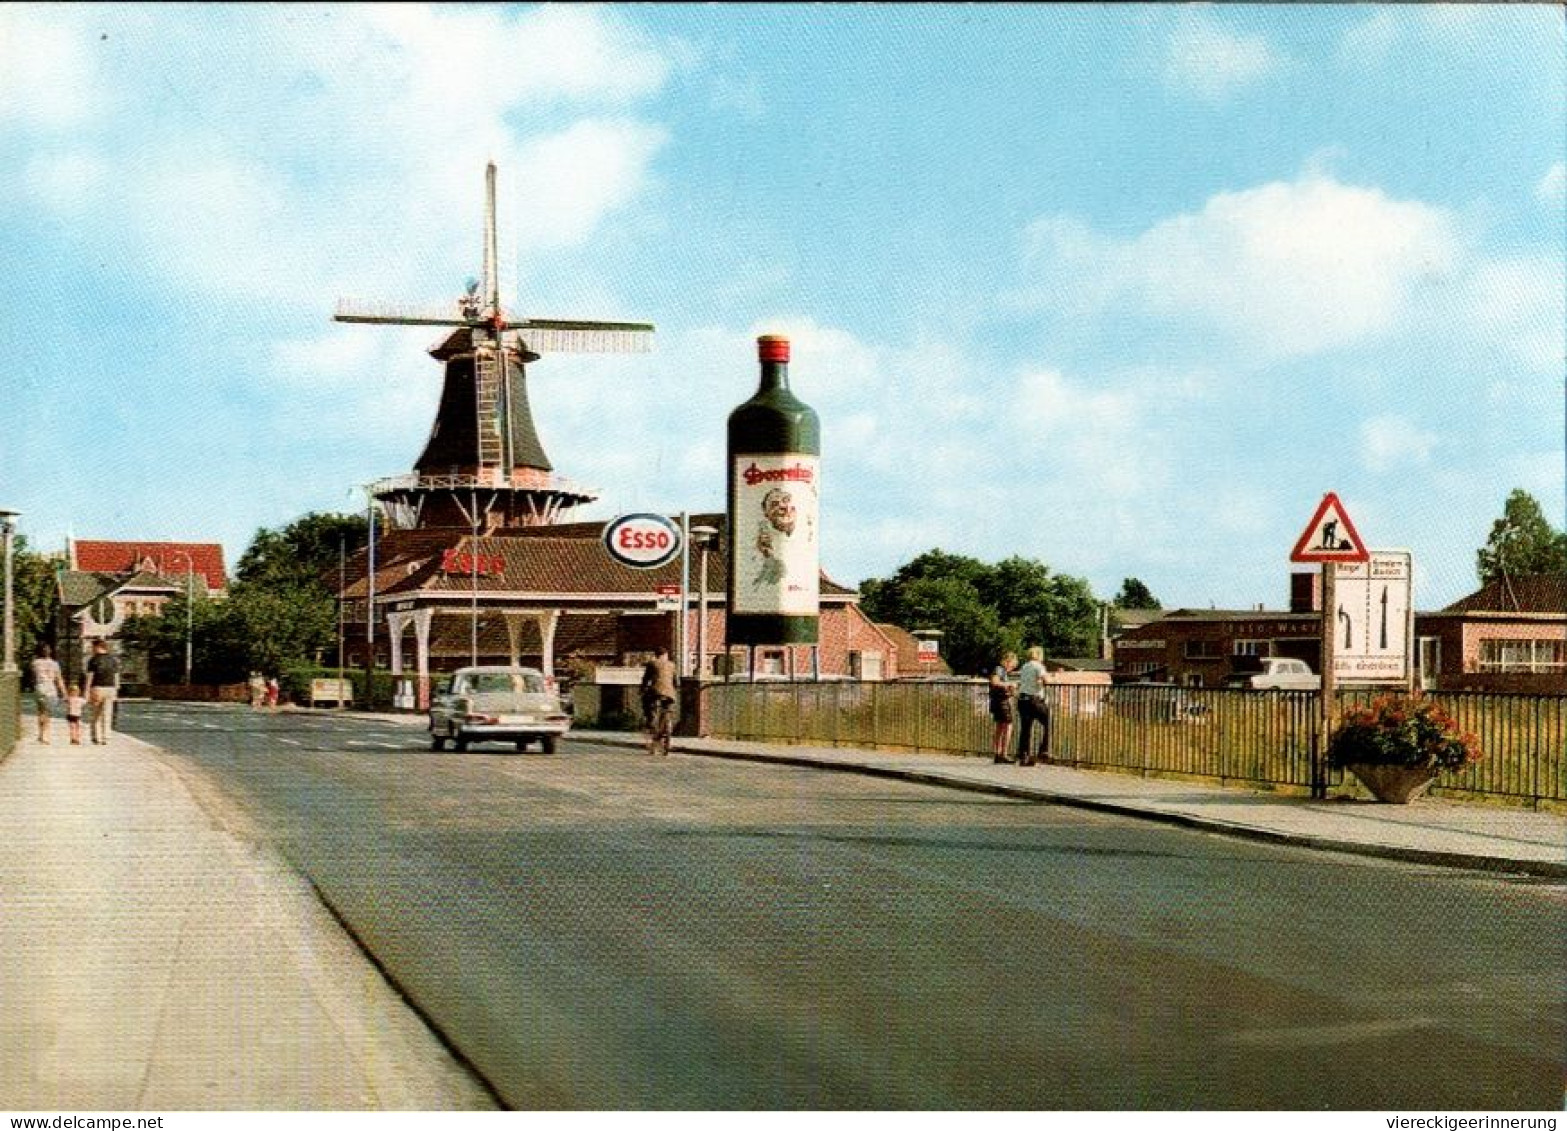 ! Ansichtskarte Aus Norden, Mühlenbrücke, Windmühle, Windmill, Esso Tankstelle, Doornkaat - Moulins à Vent